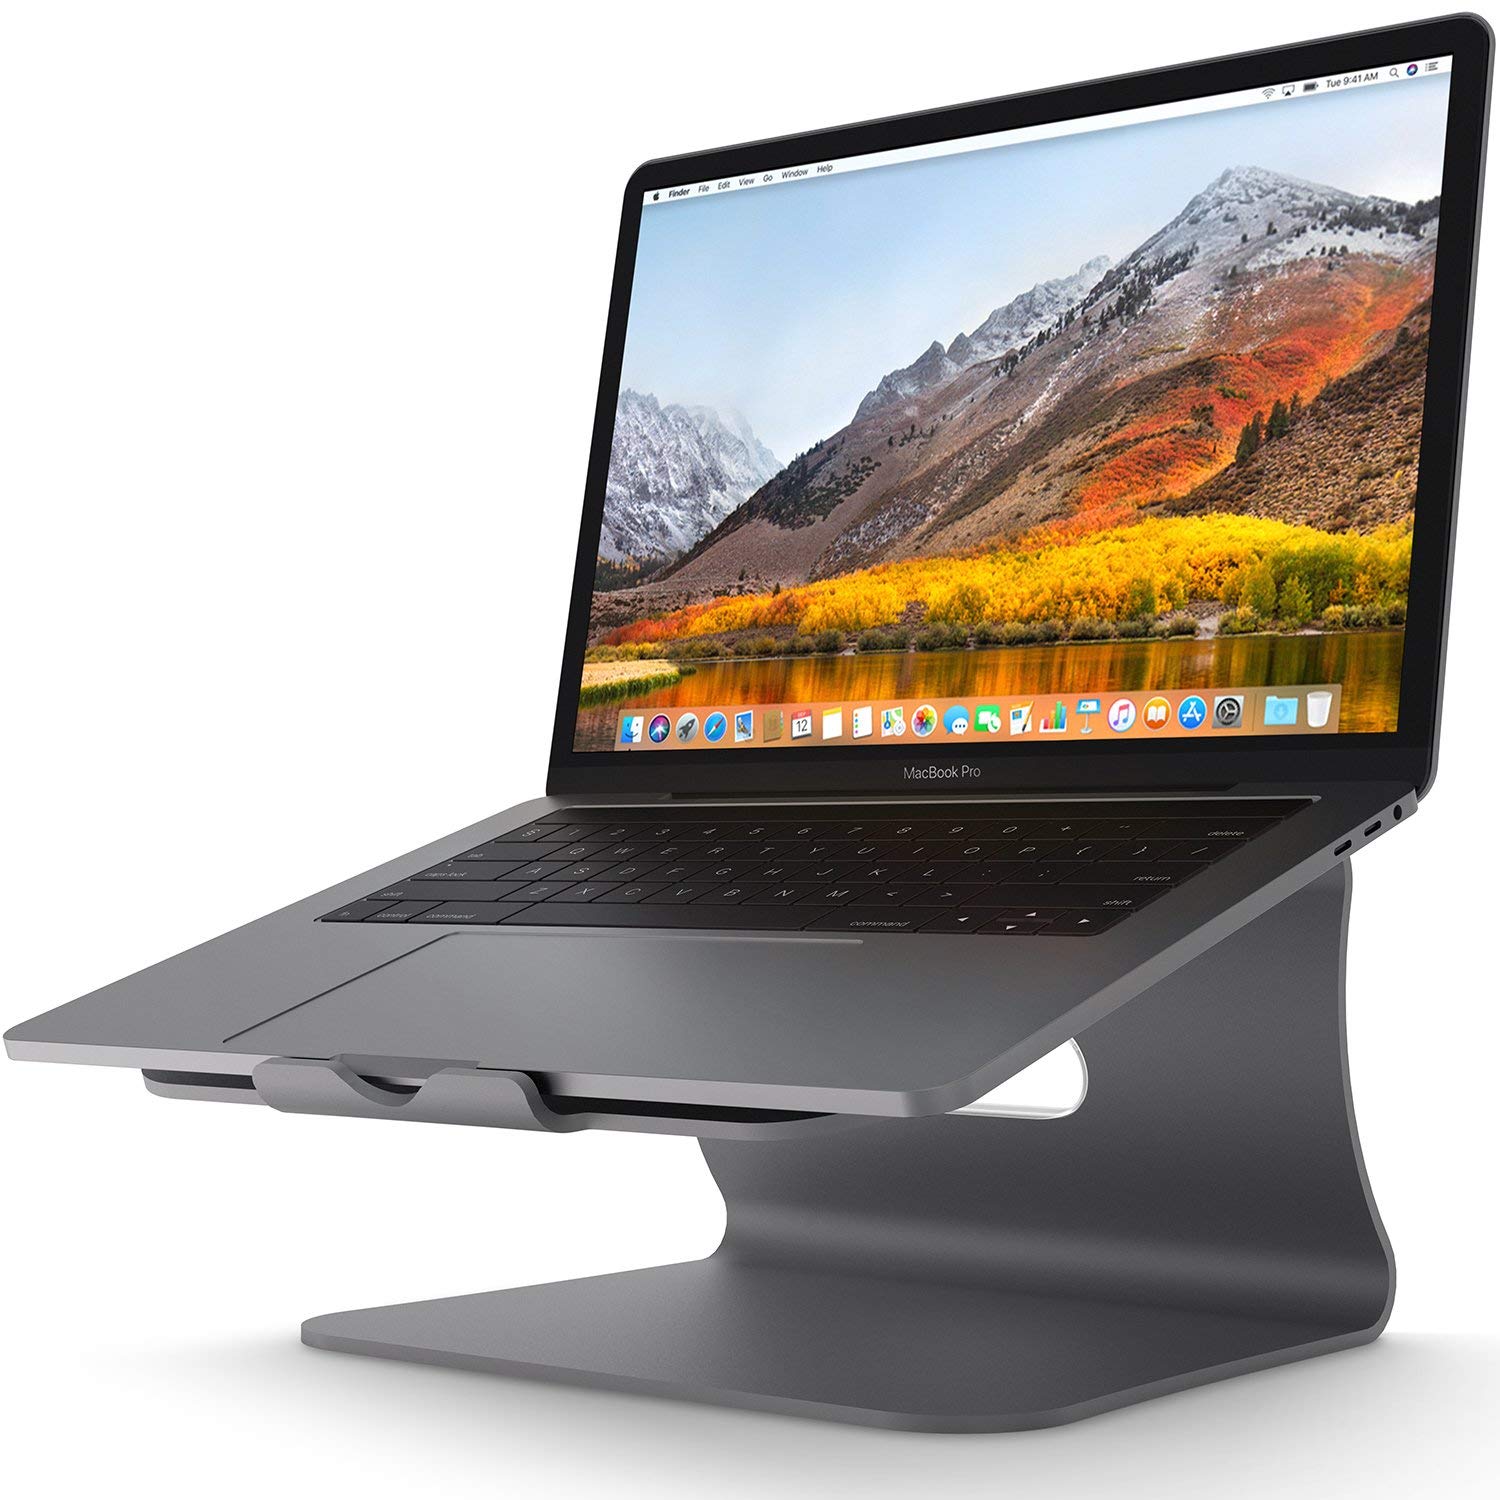 Soporte para computadora Apple MacBook Air, MacBook Pro Color Gris.